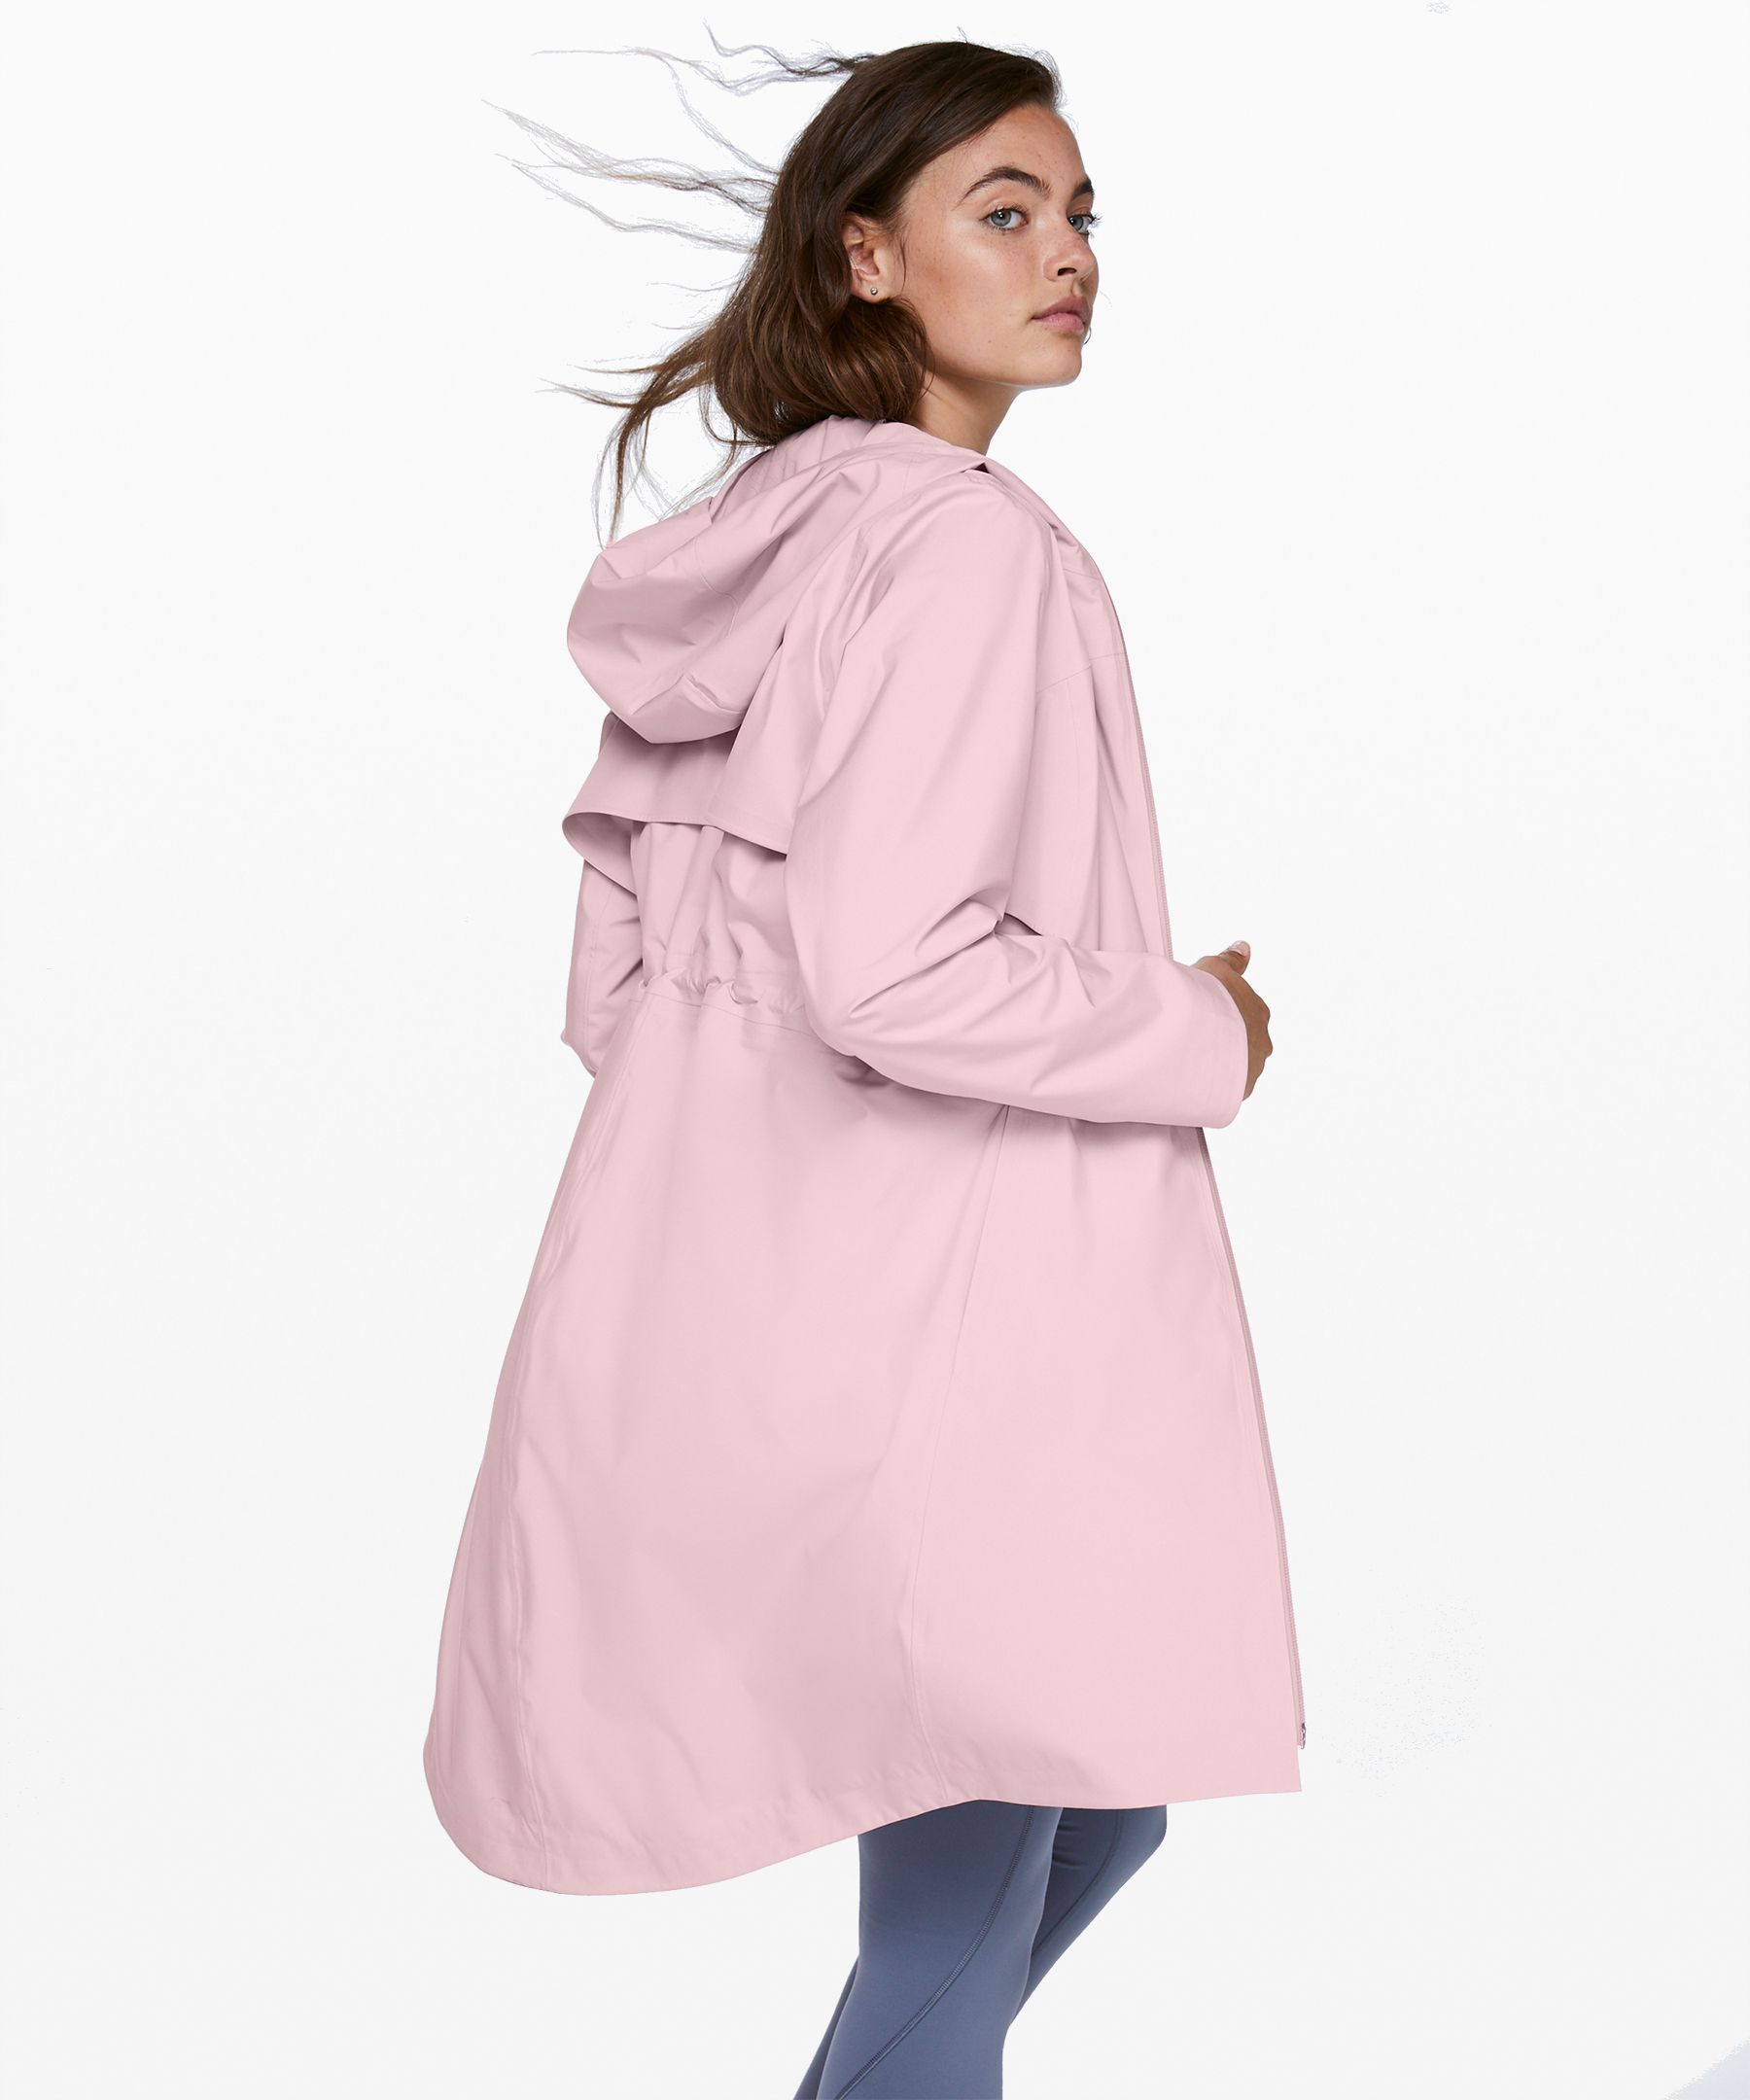 lululemon rain jacket